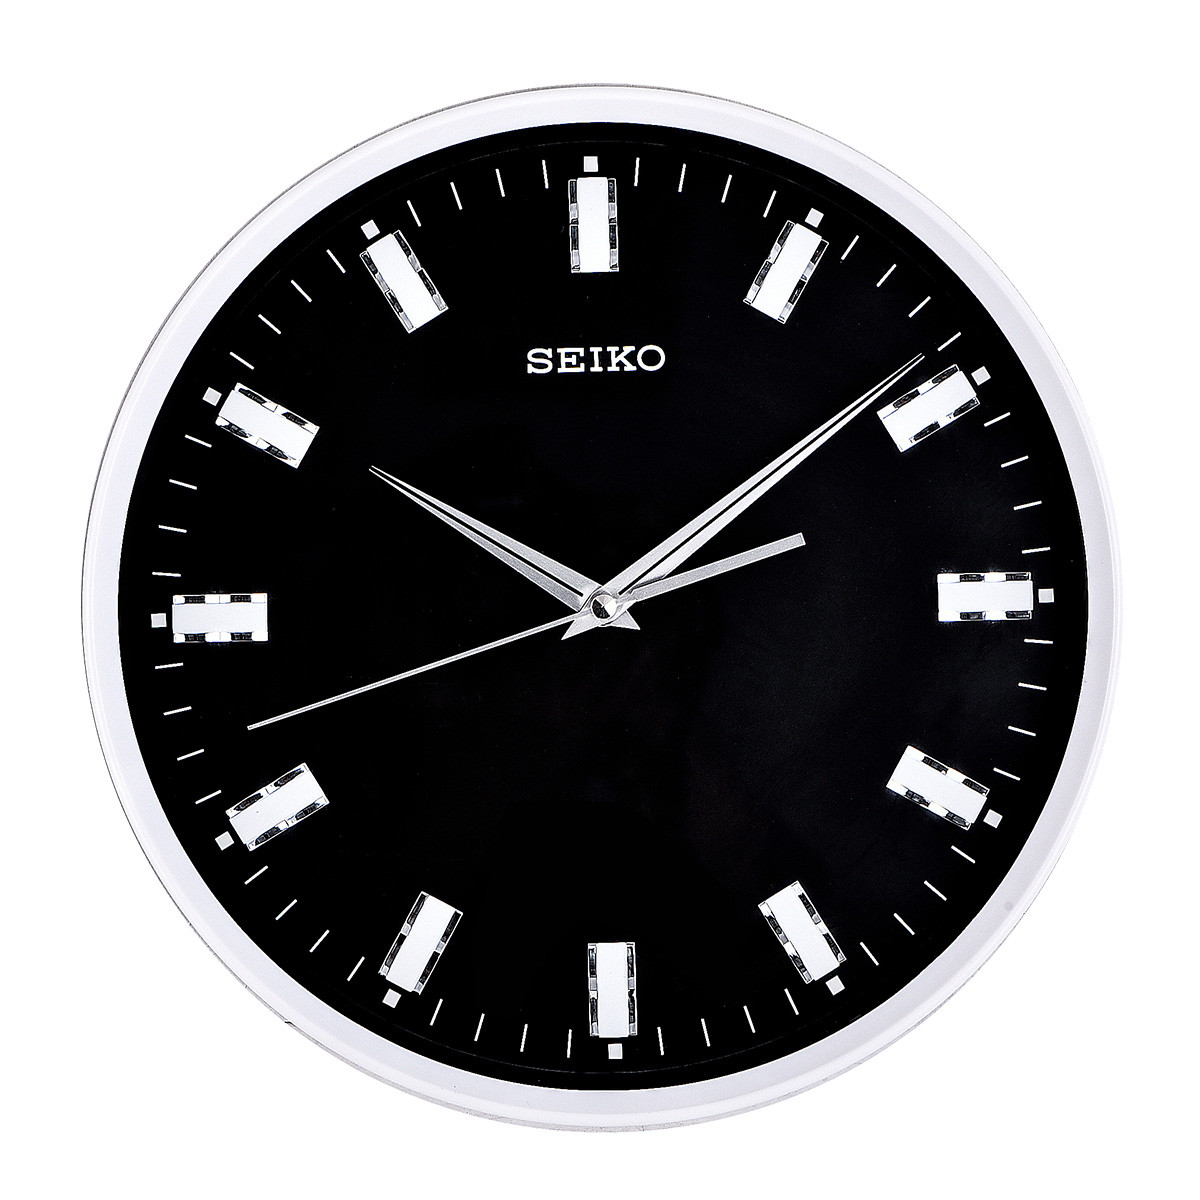 นาฬิกาแขวนผนัง ตัวเรือนทำจากพลาสติก SEIKO รุ่น QXA703S สีน้ำเงิน QXA703W สีดำ ขนาด 30.5 ซม. ทรงกลม Quartz 3 เข็ม เครื่องเดินเรียบไม่มีเสียงรบกวน